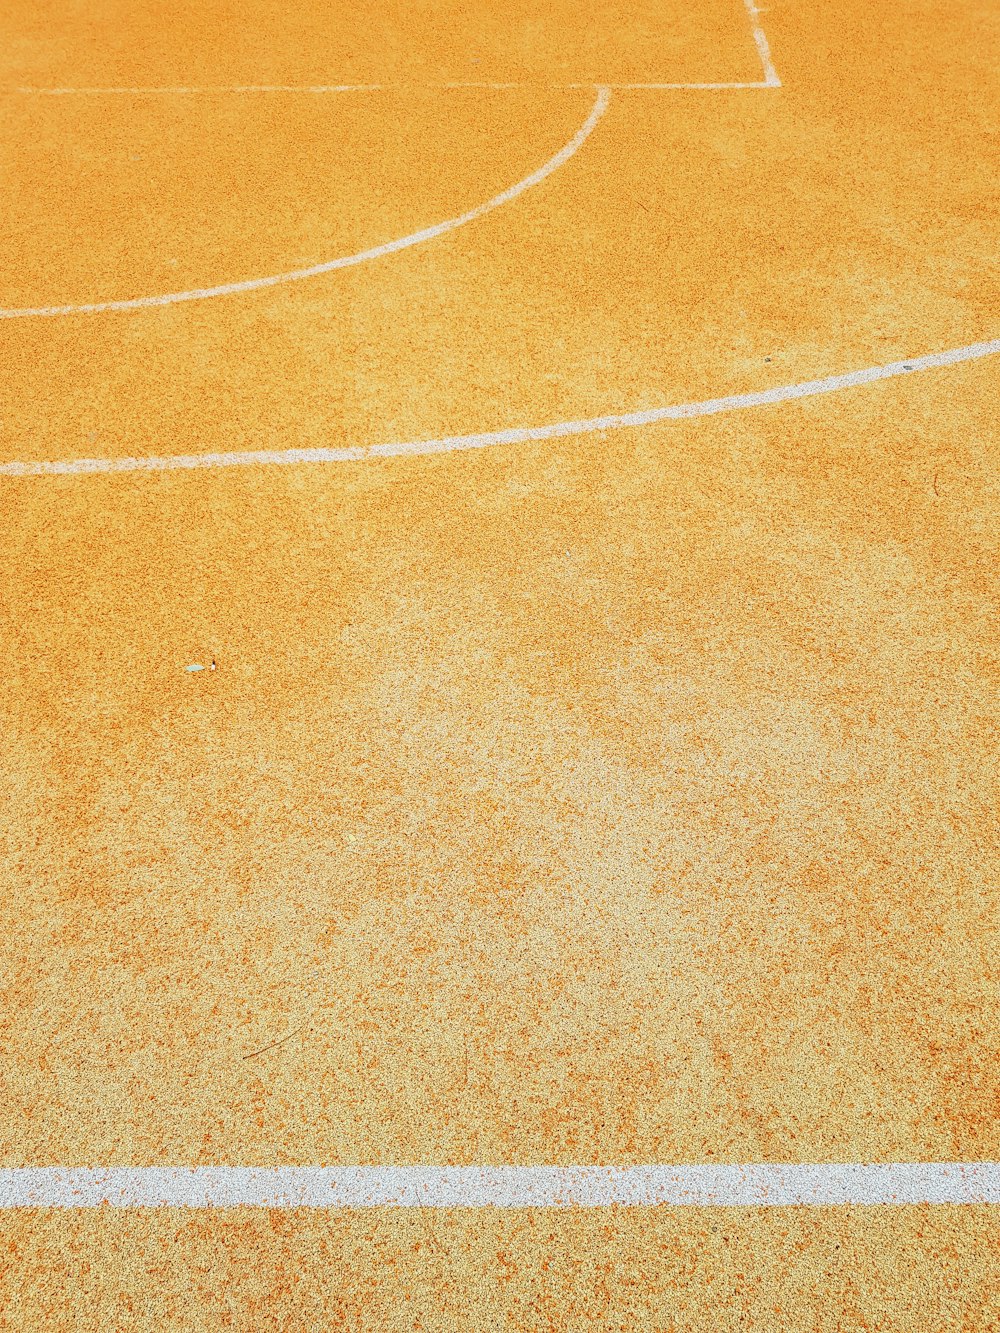 白い線が入ったバスケットボールコート